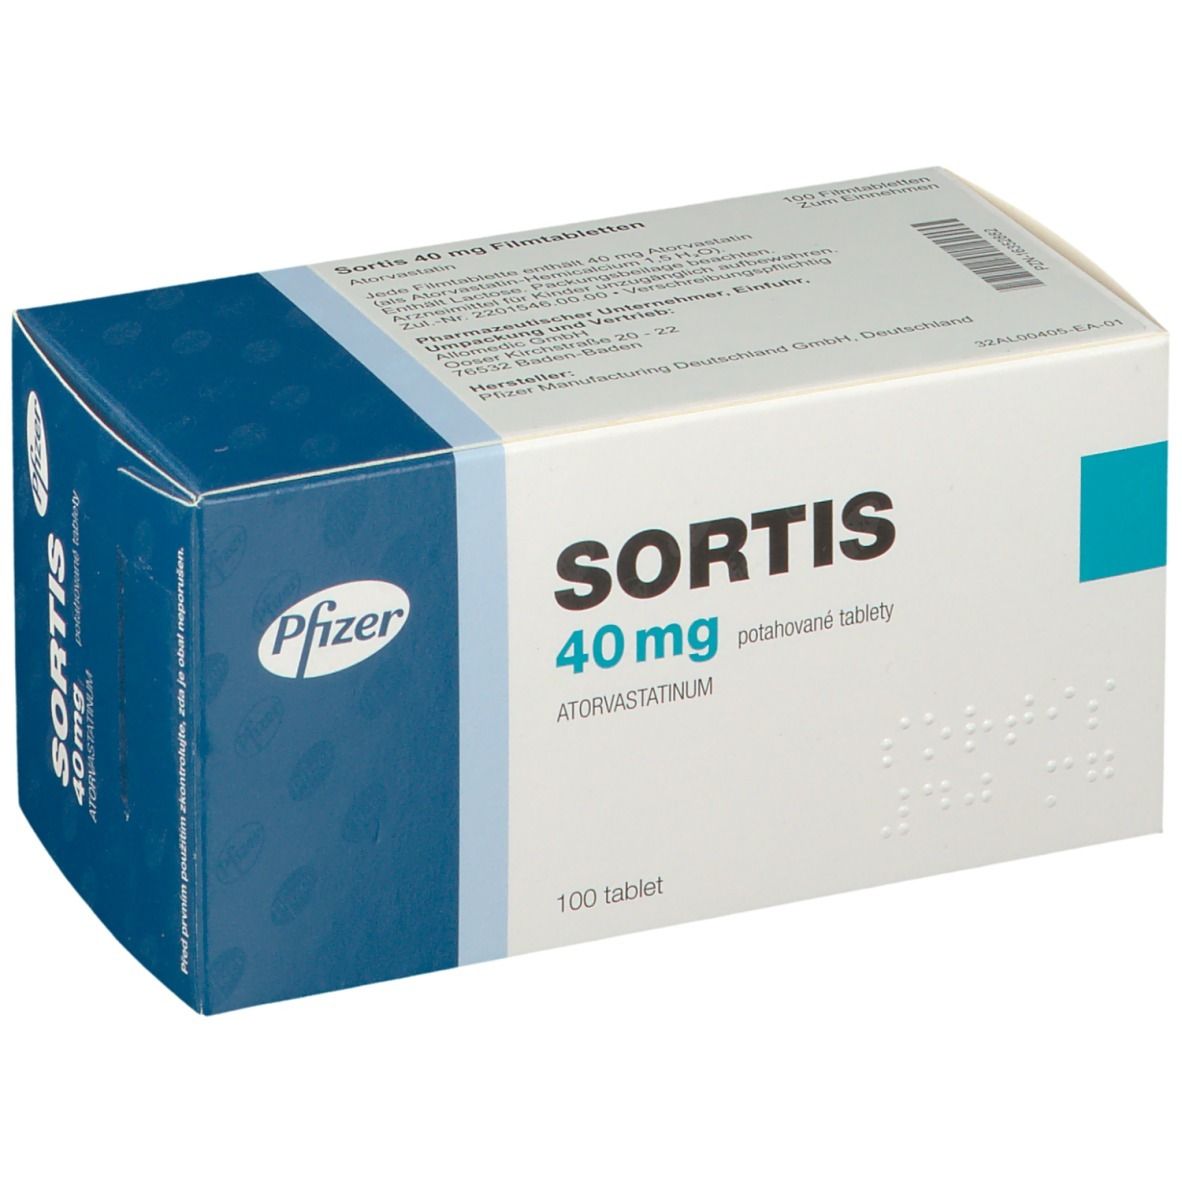 Sortis 40 mg